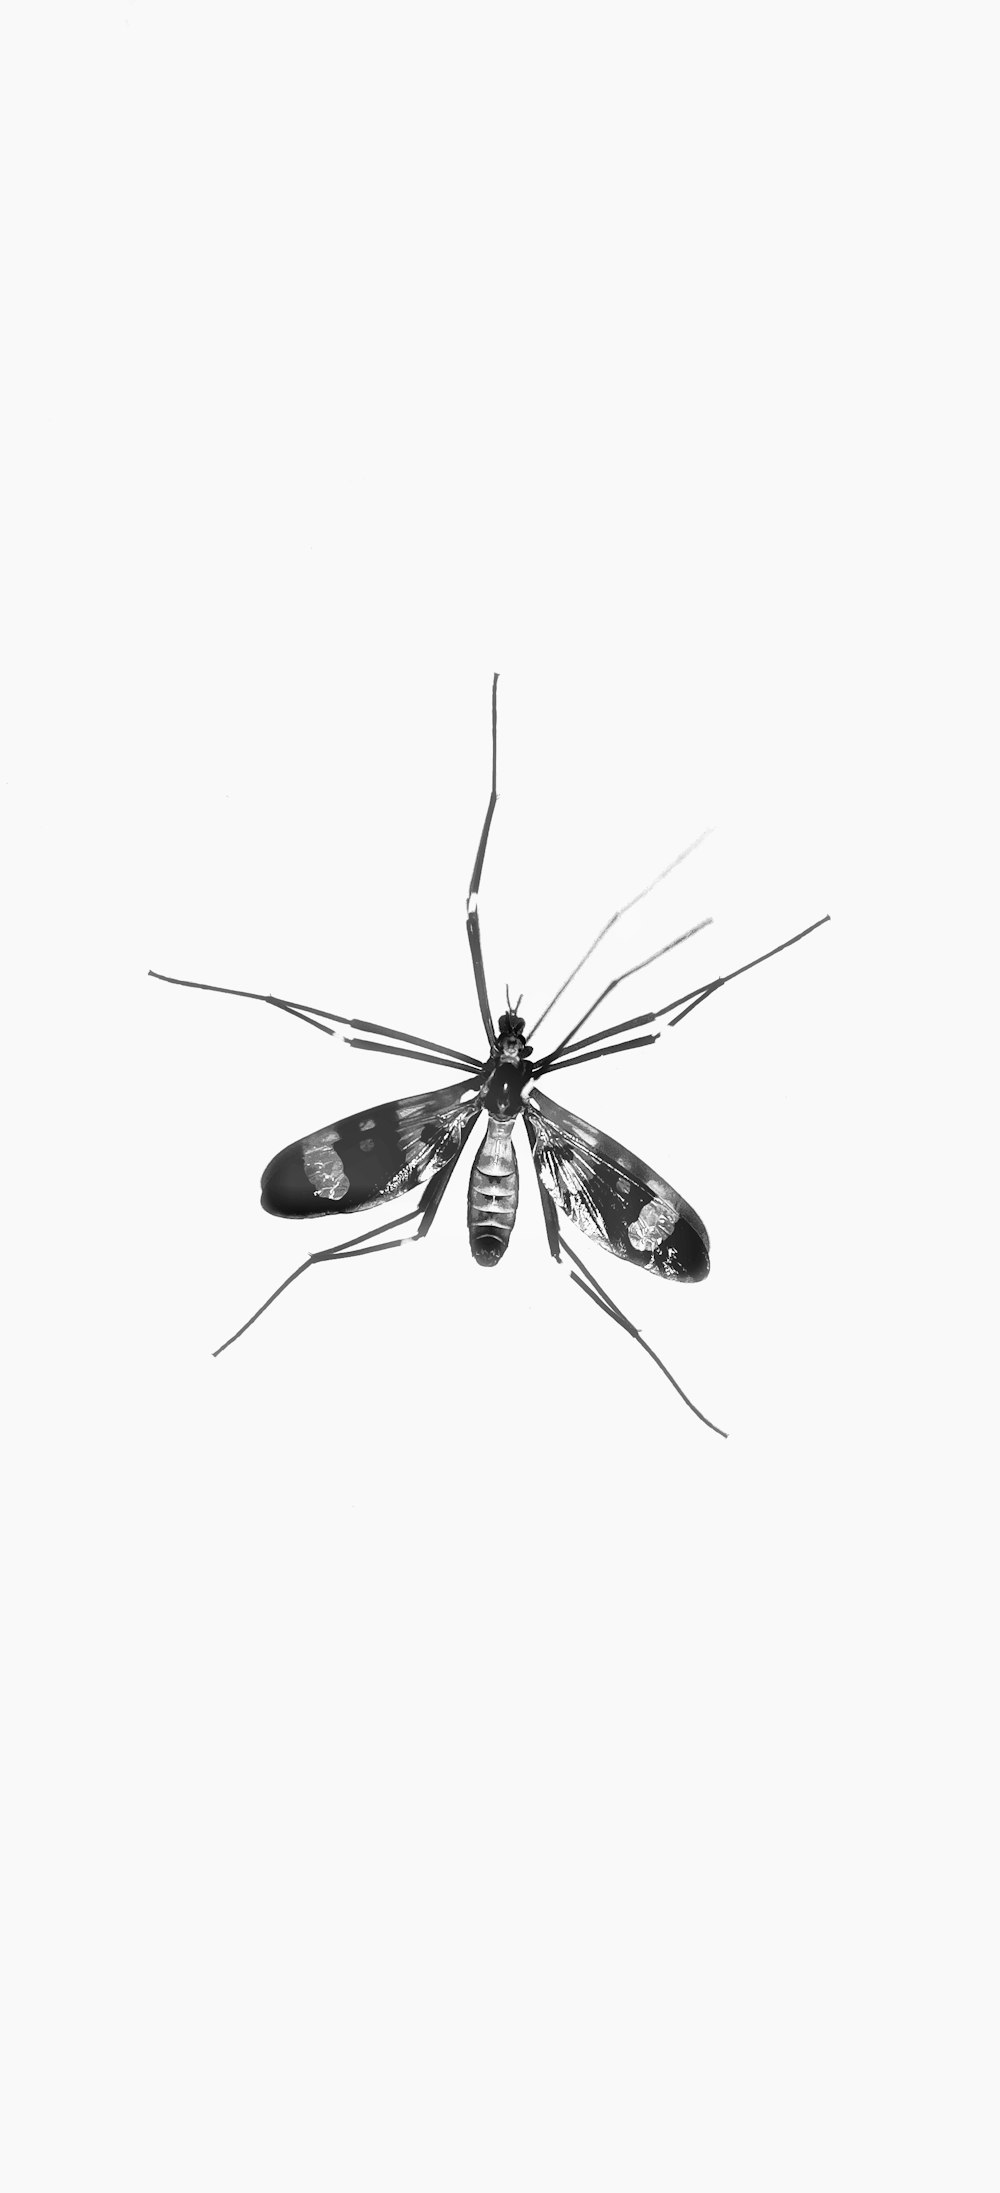 schwarz-weiße Motte auf weißer Oberfläche